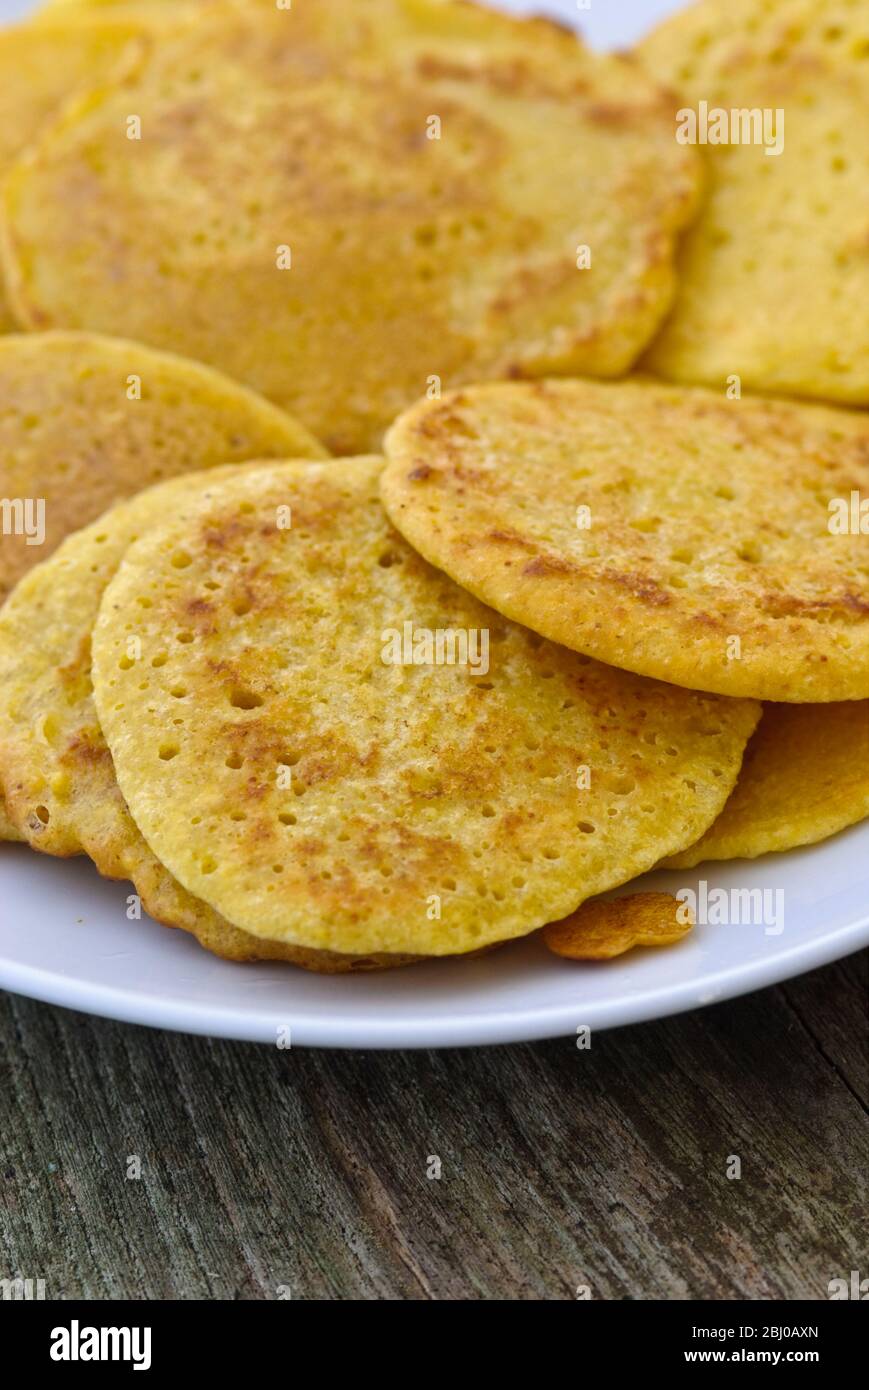 Petites crêpes faites de farine de pois chiches indiens (chana dal), sans gluten et très nutritives. - Banque D'Images